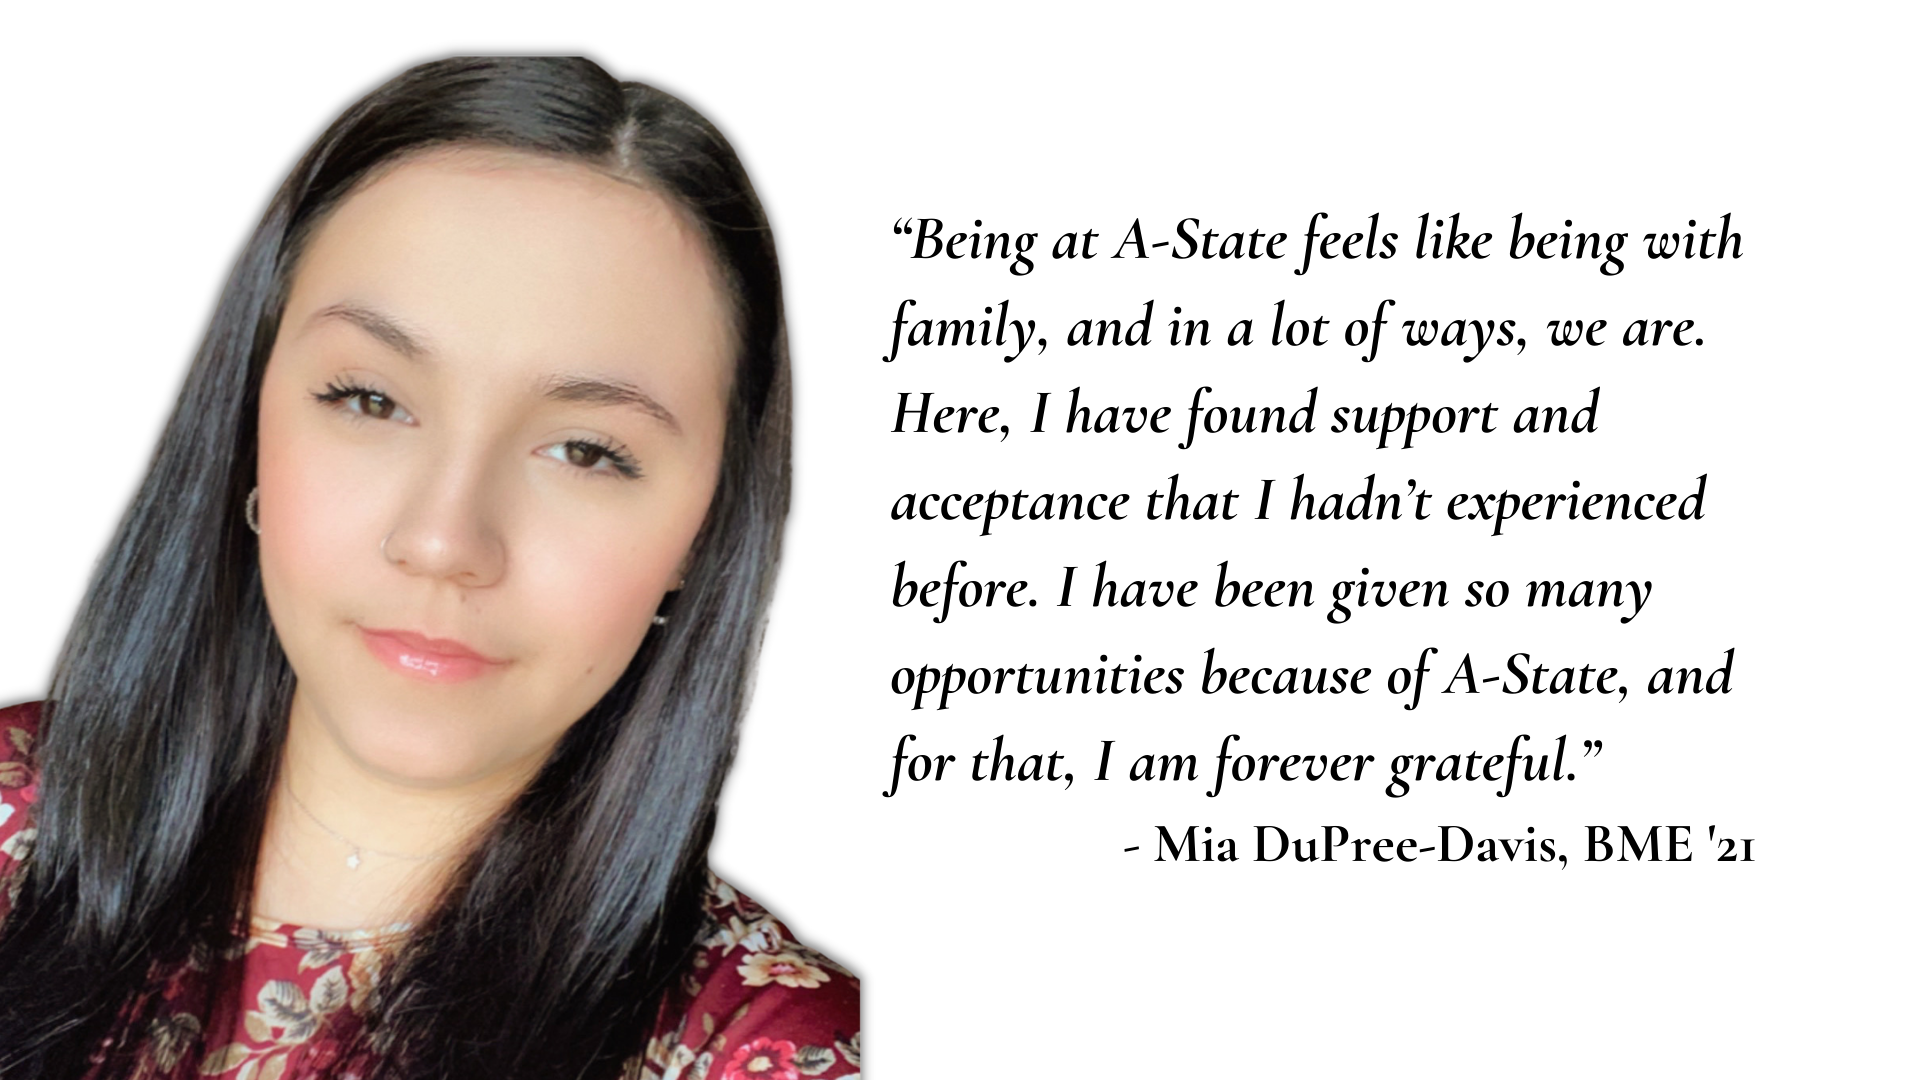 Mia DuPree-Davis says 